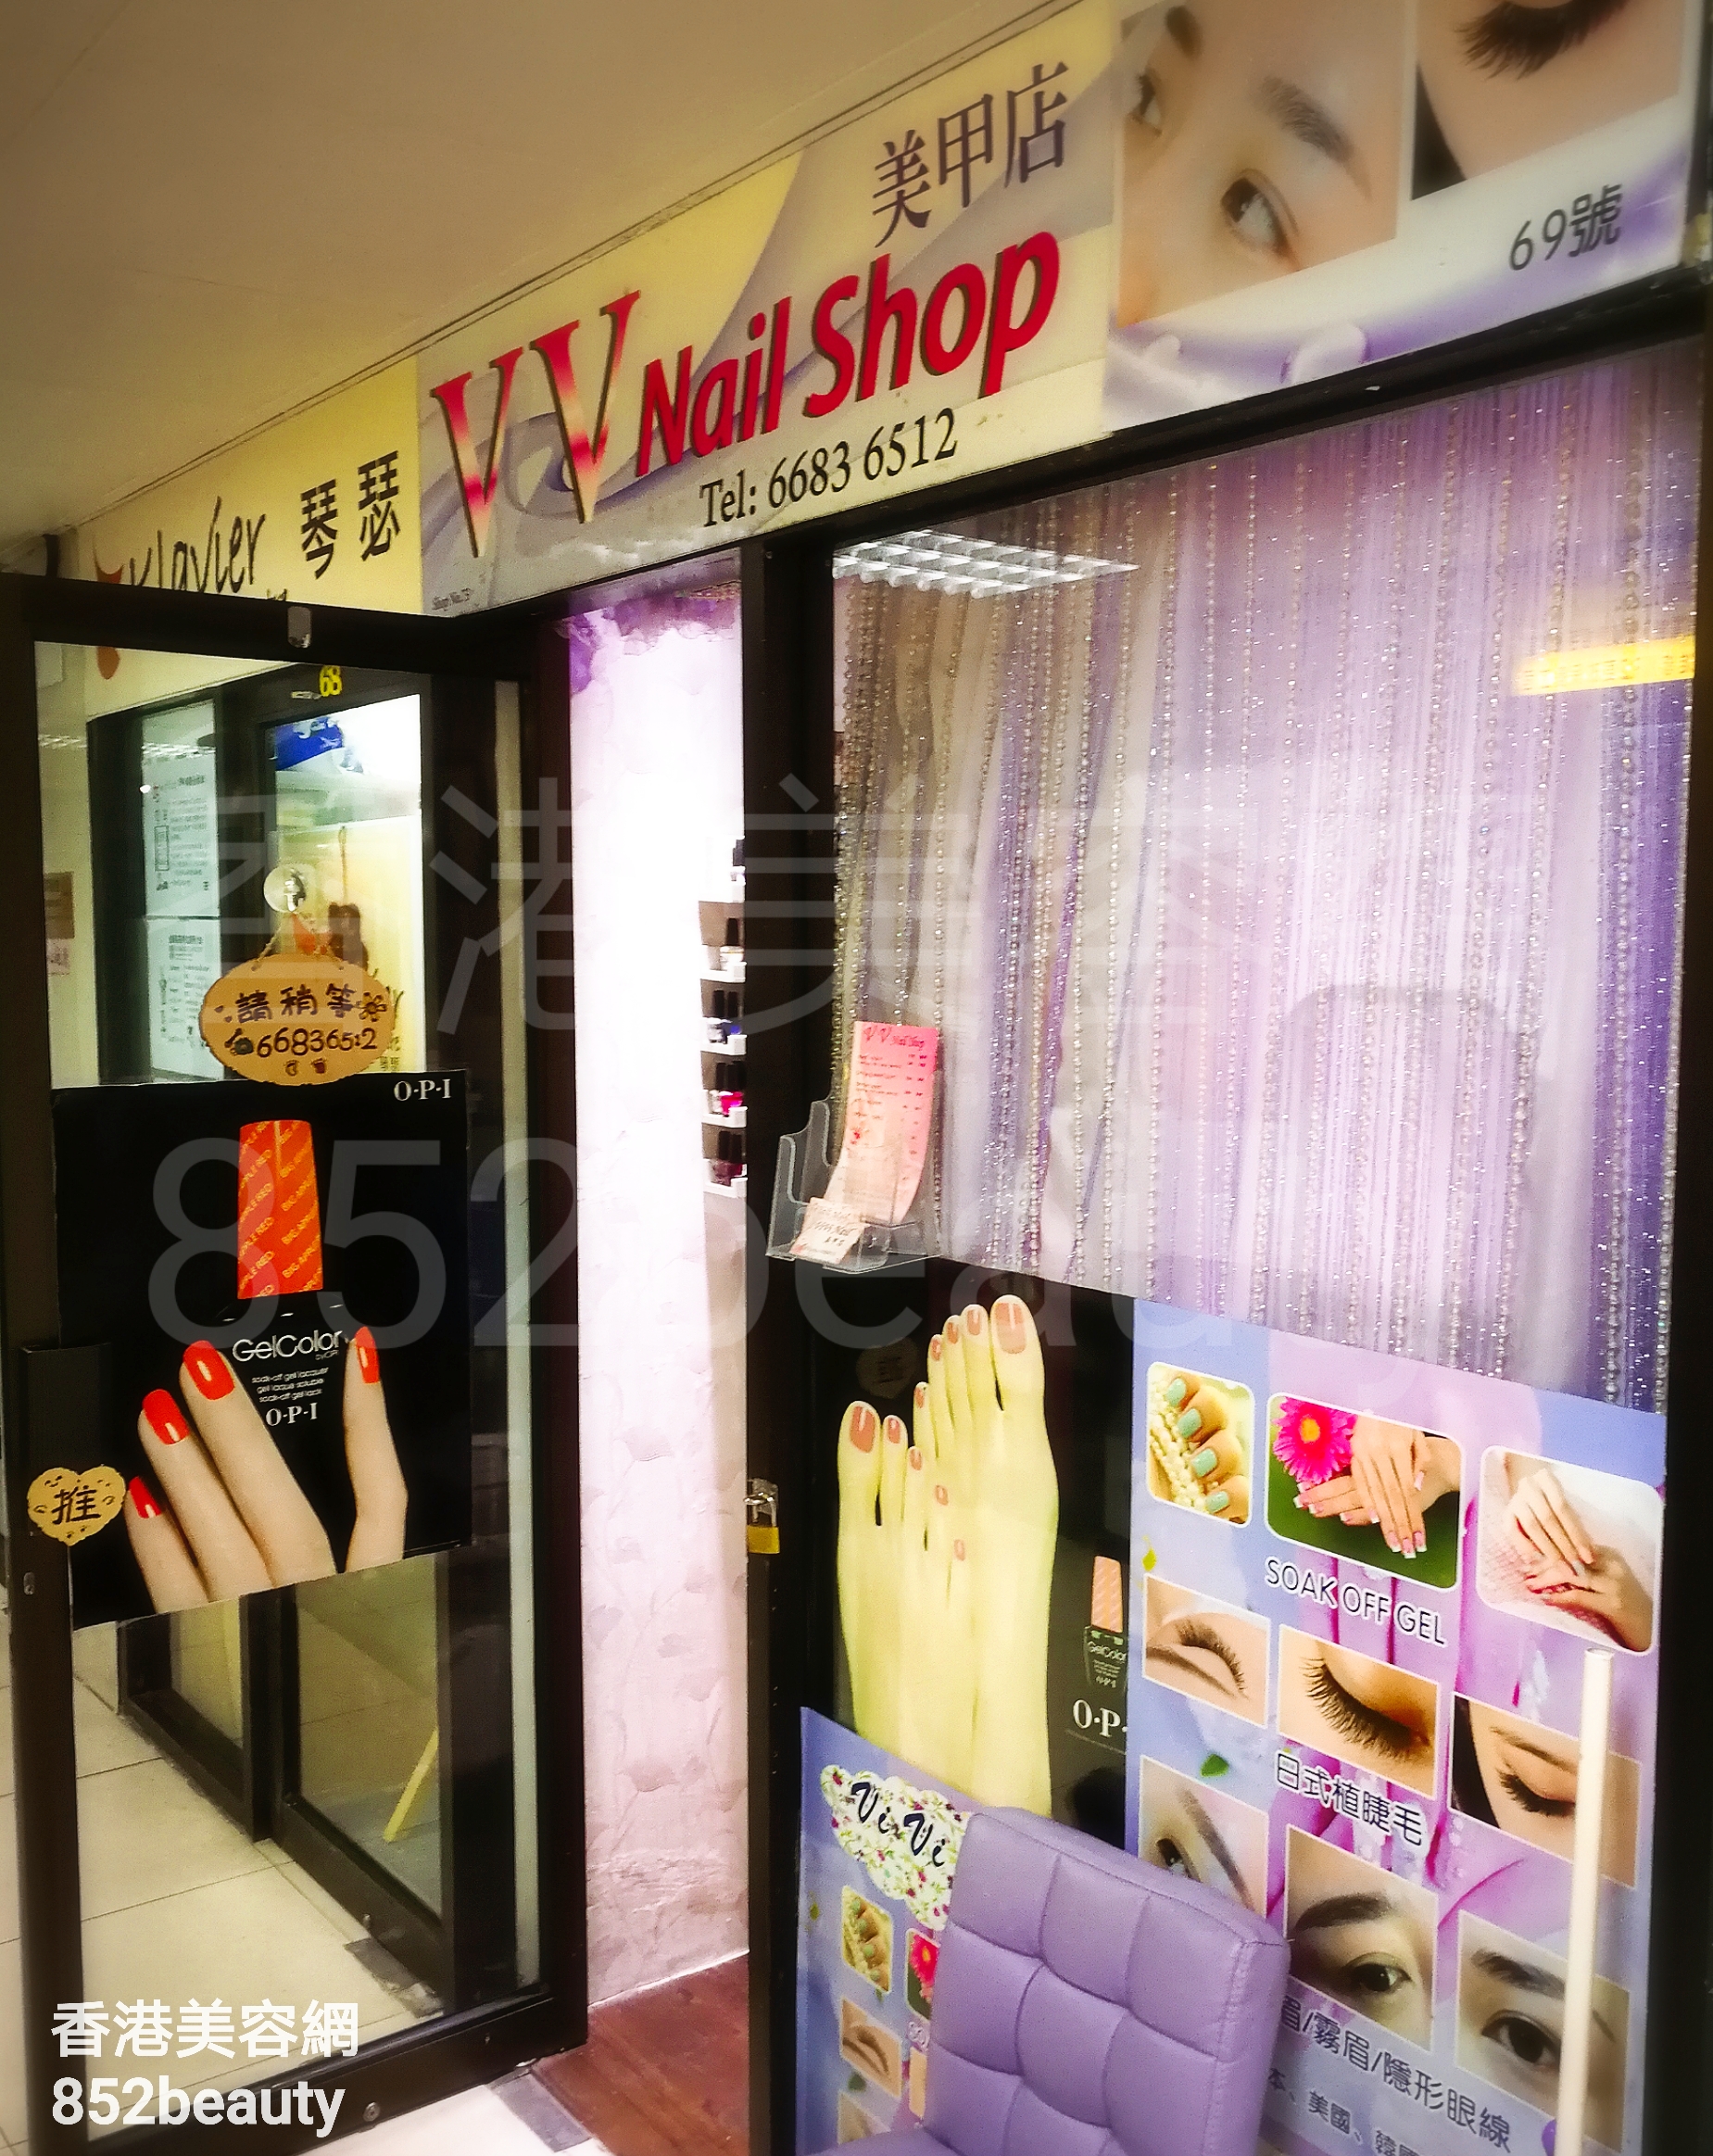 美容院: VV Nail Shop